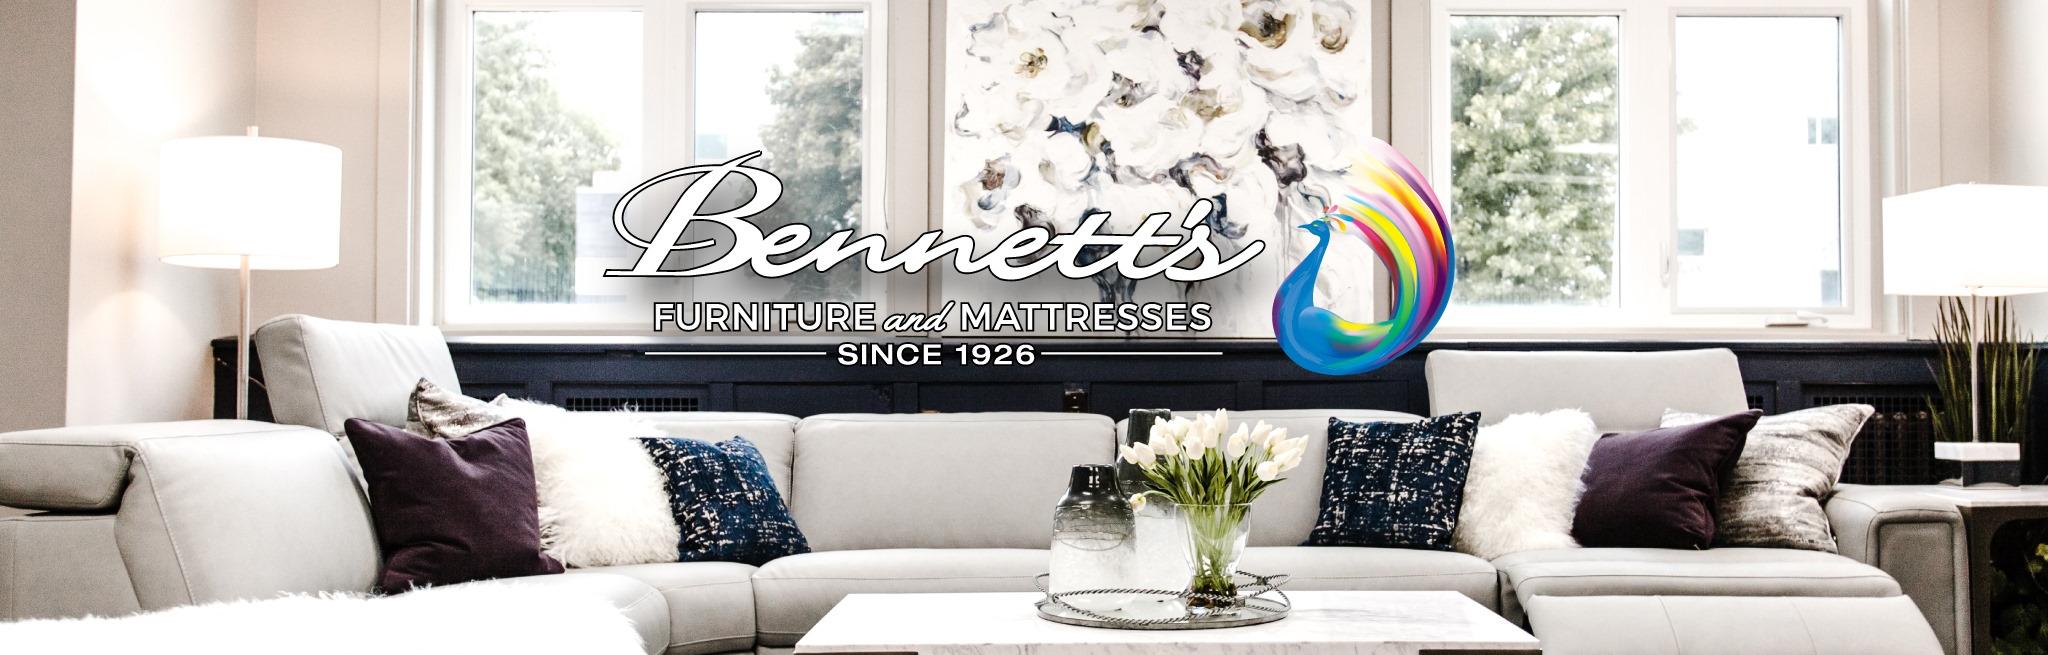 Bennett's Home Furnishings Online